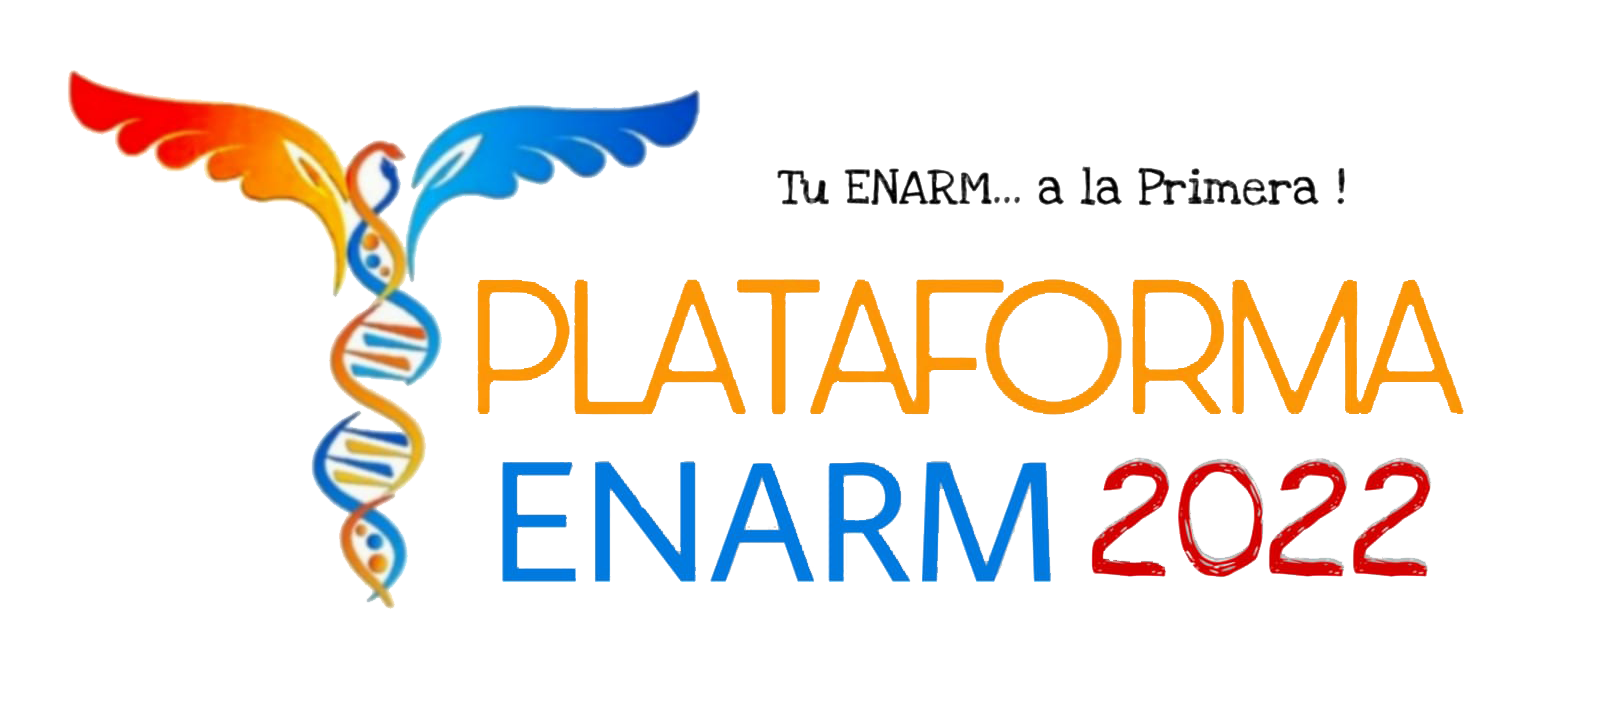 Plataforma ENARM